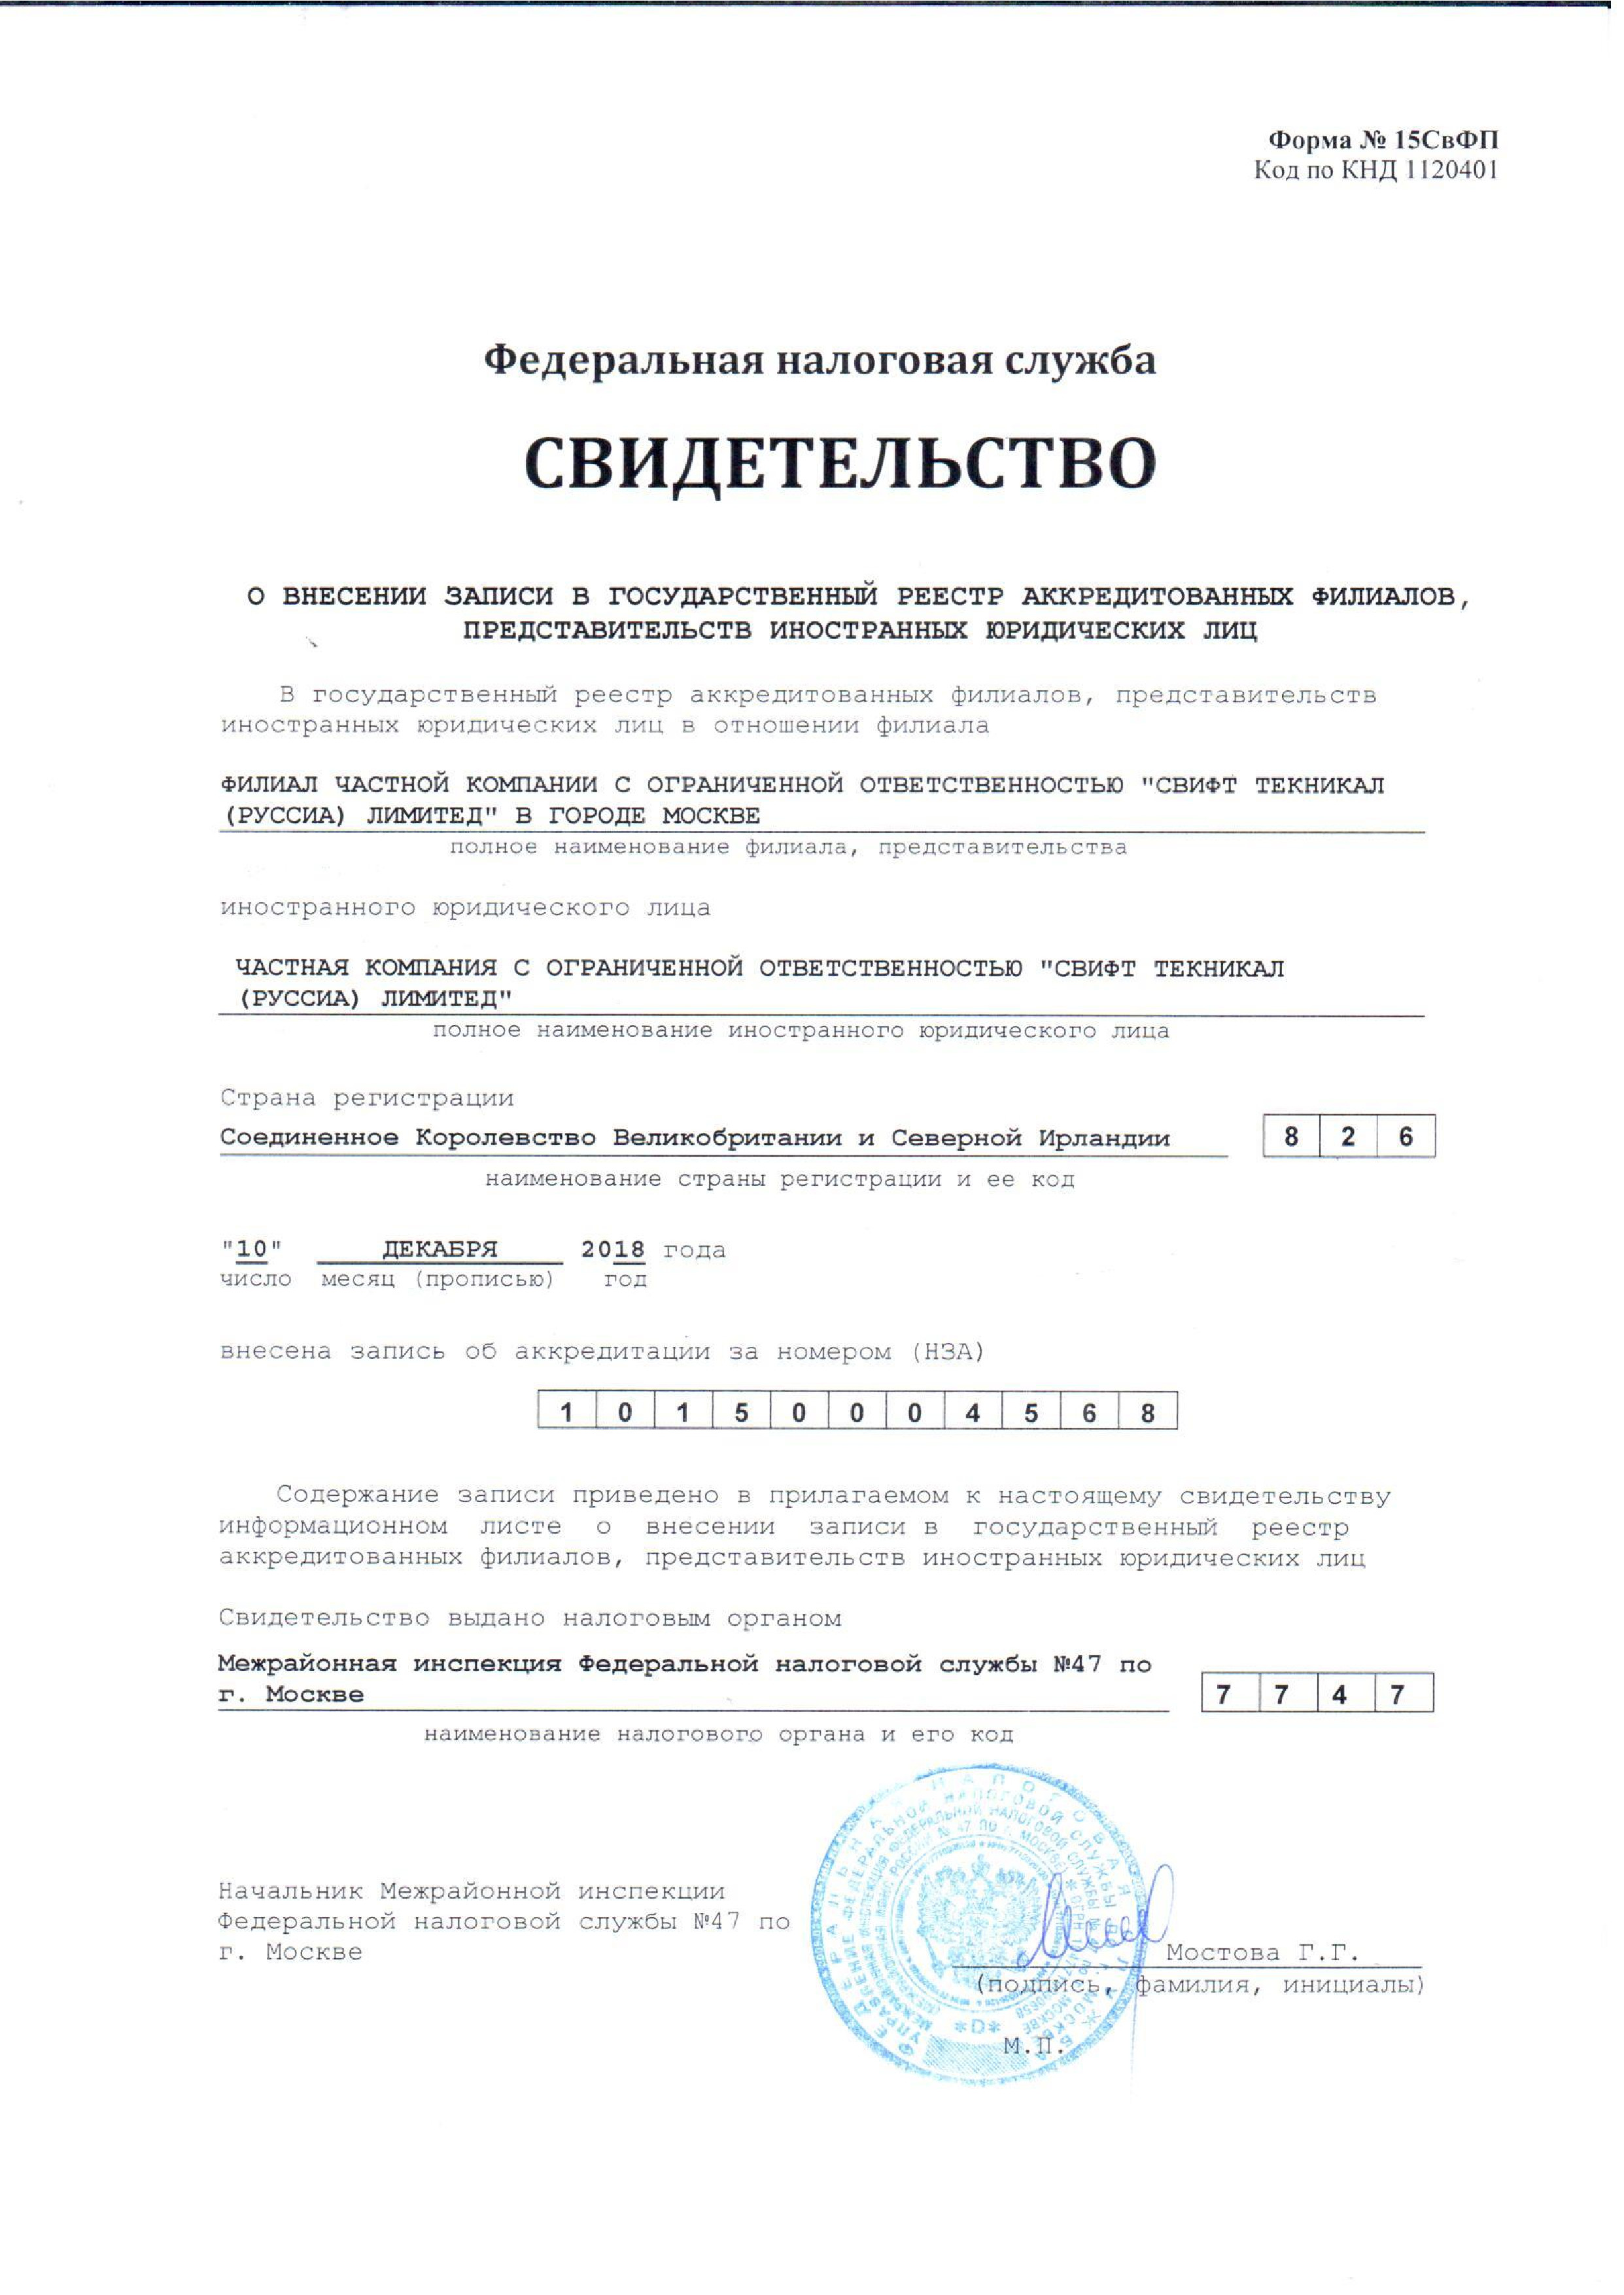 Регистрация иностранных представительств в России